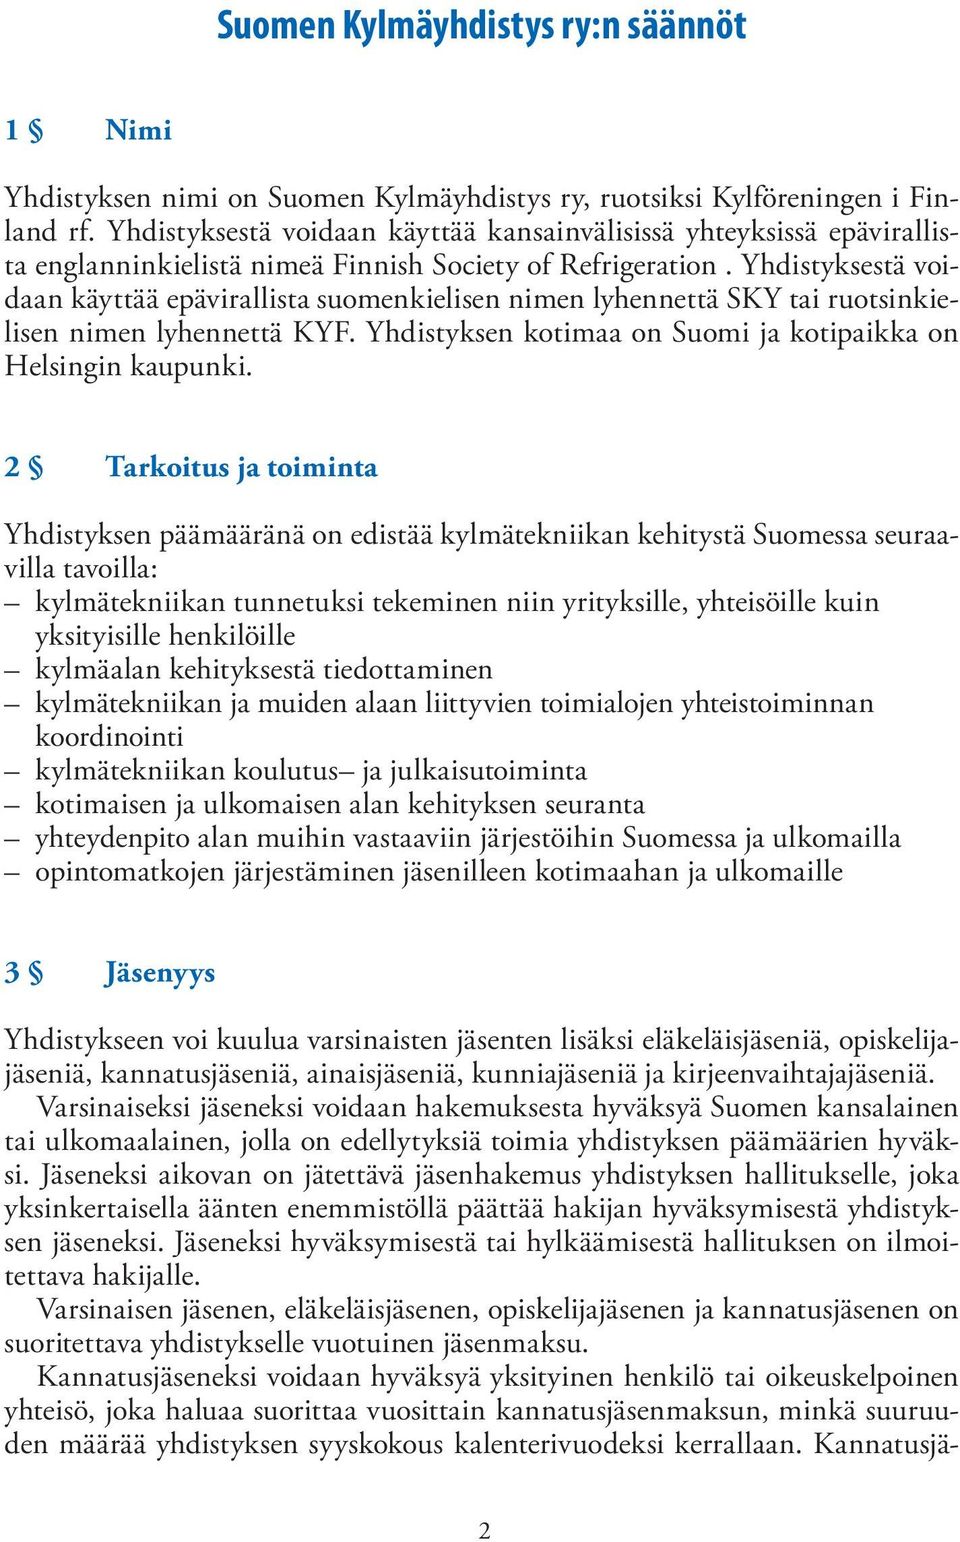 Yhdistyksestä voidaan käyttää epävirallista suomenkielisen nimen lyhennettä SKY tai ruotsinkielisen nimen lyhennettä KYF. Yhdistyksen kotimaa on Suomi ja kotipaikka on Helsingin kaupunki.